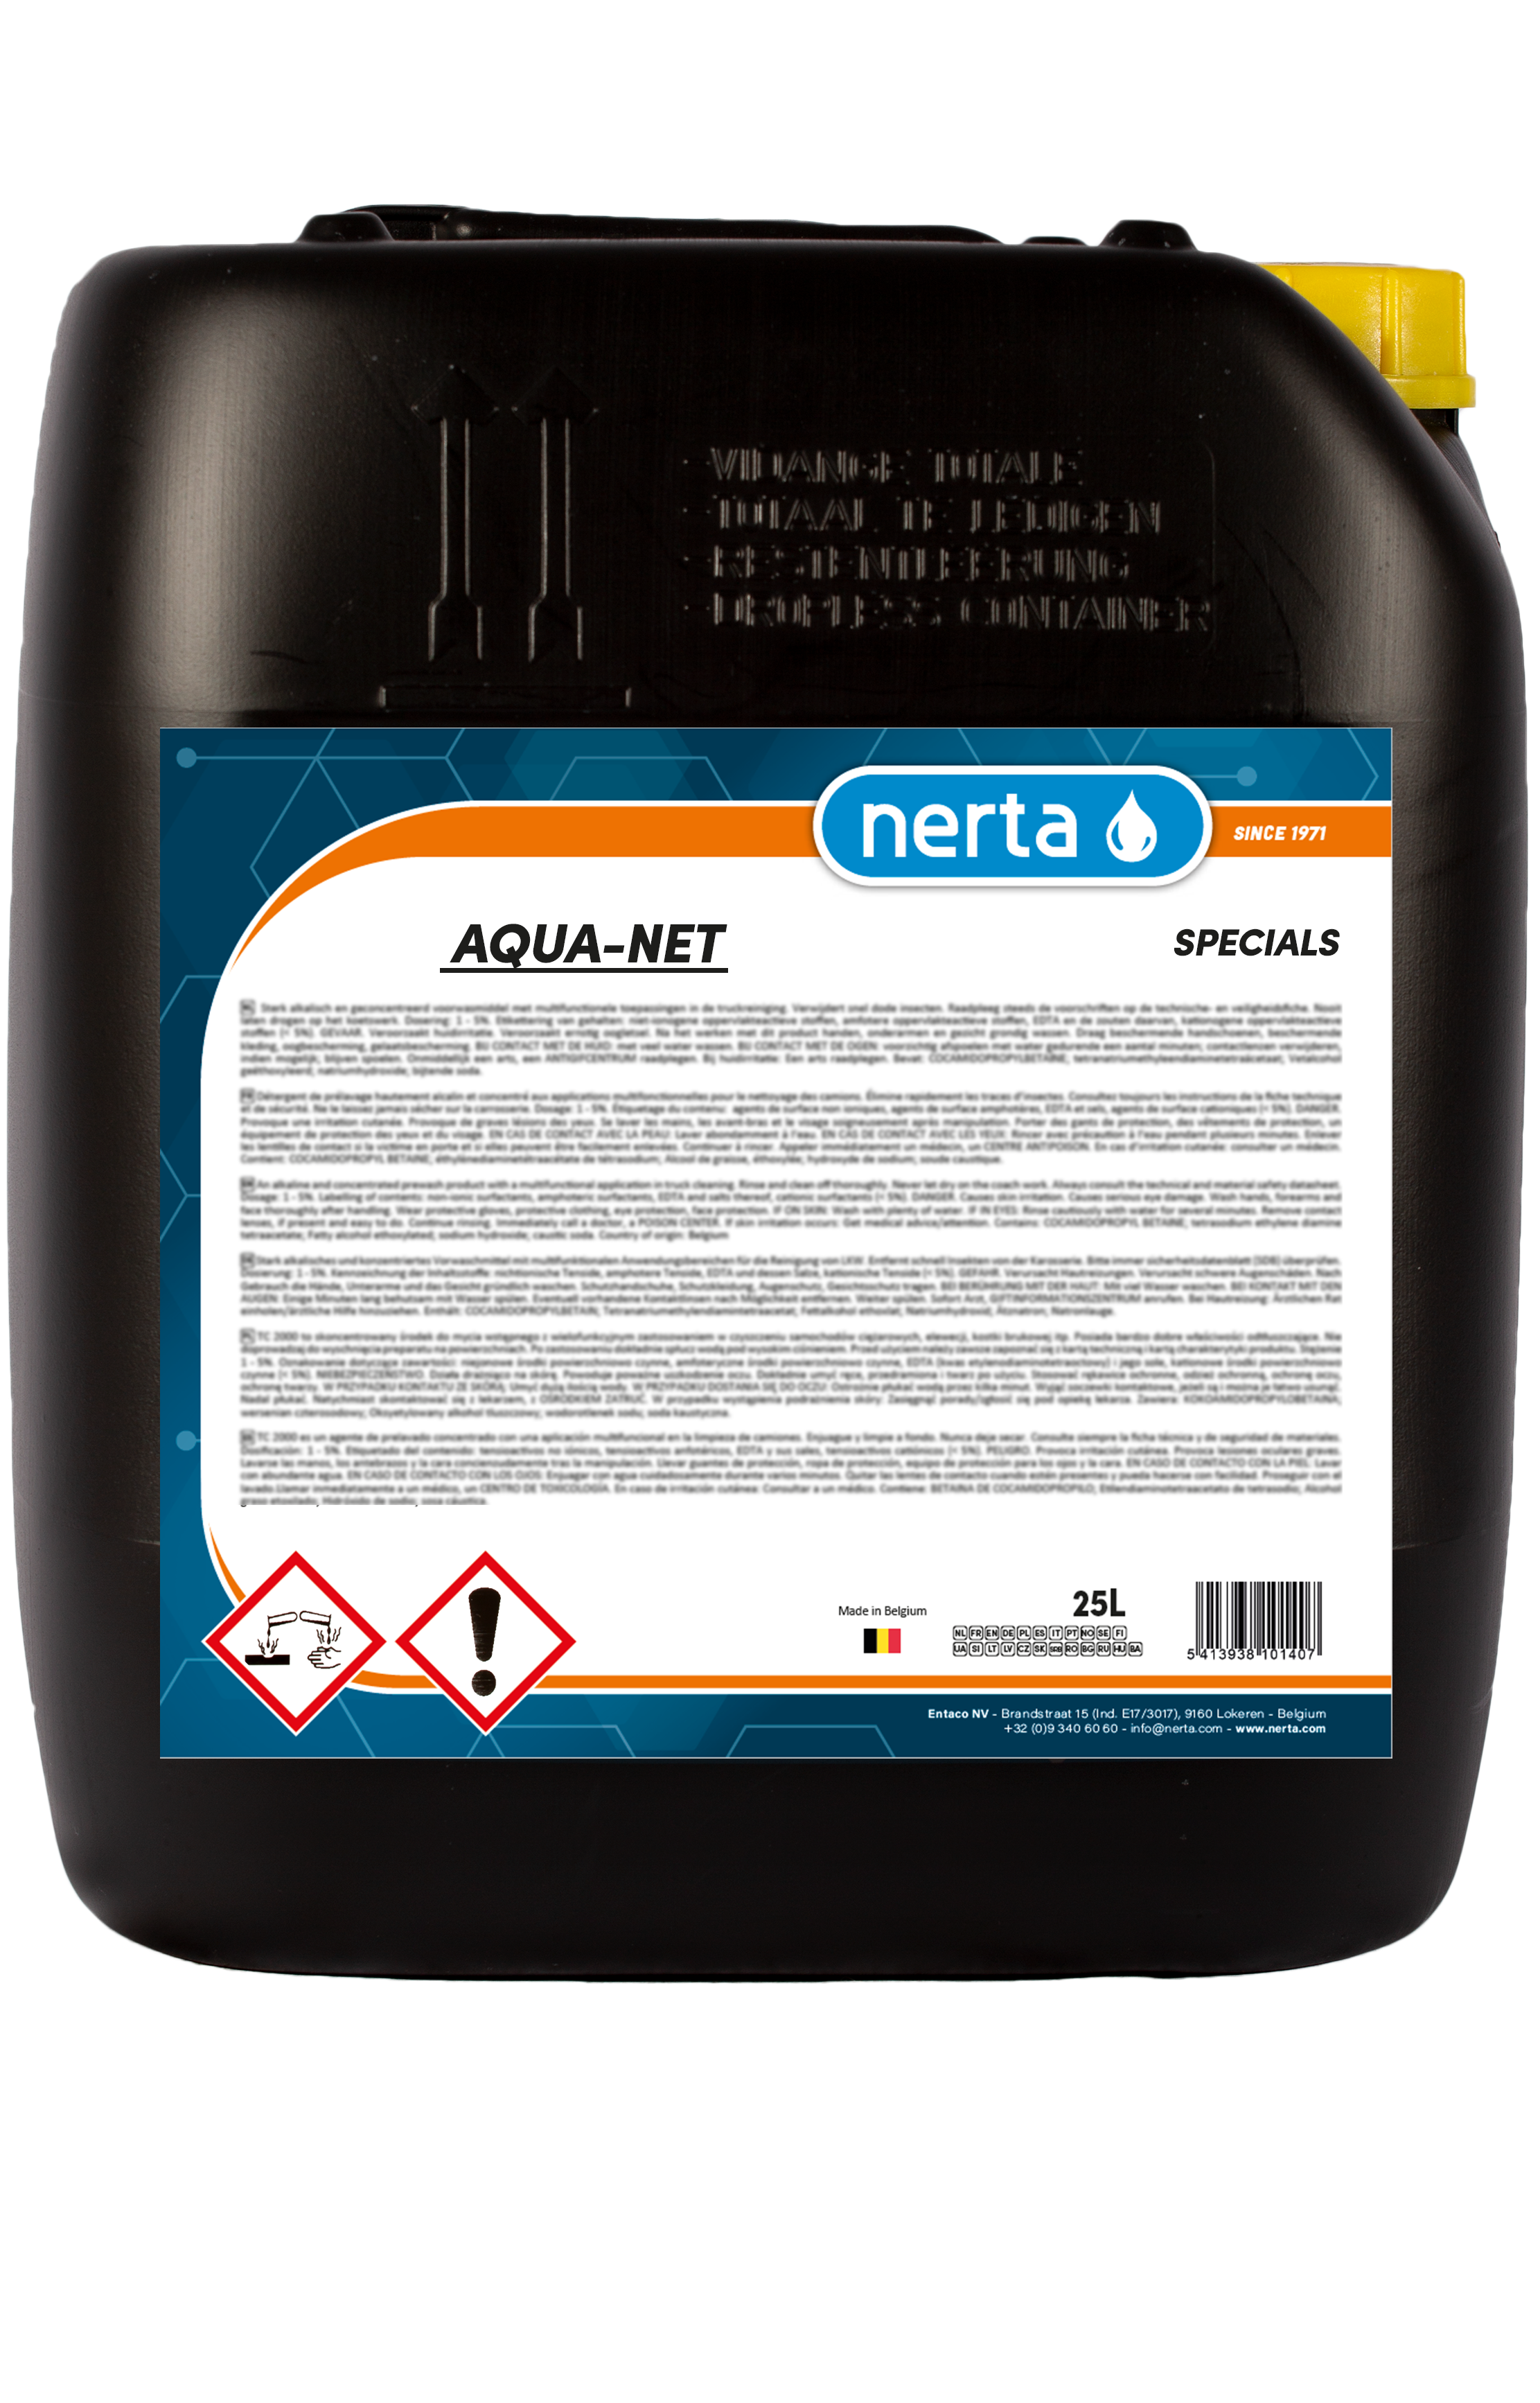 AQUA-NET - Nerta Professional cleaning products